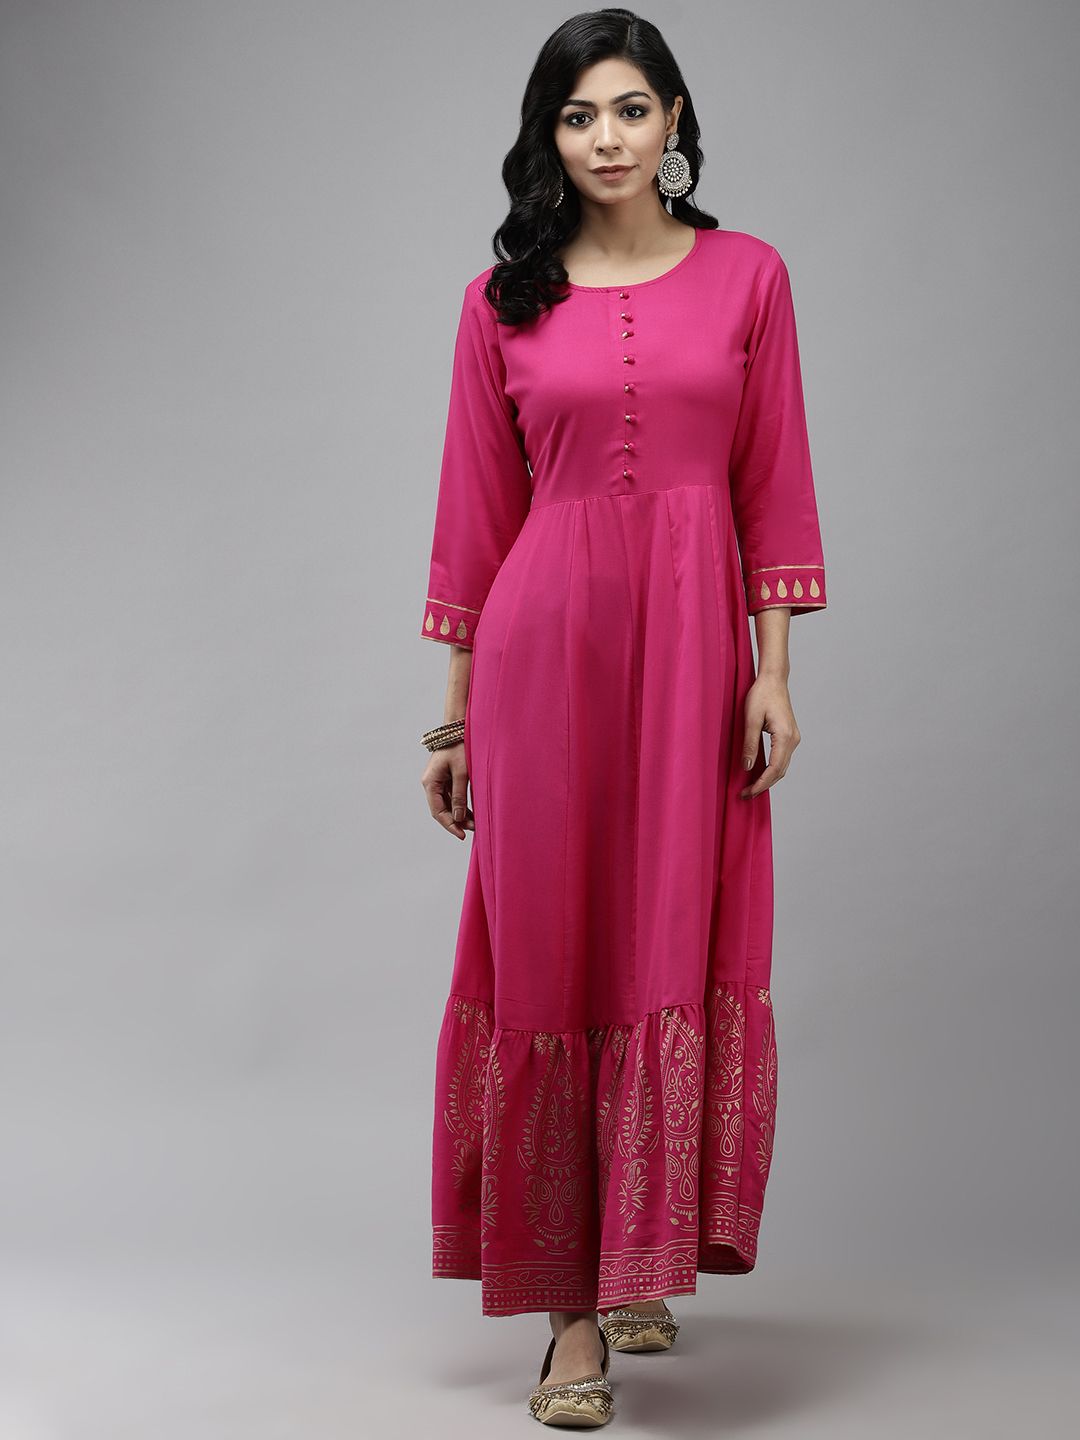 Yufta Magenta Ethnic Motifs Ethnic Maxi Dress Price in India